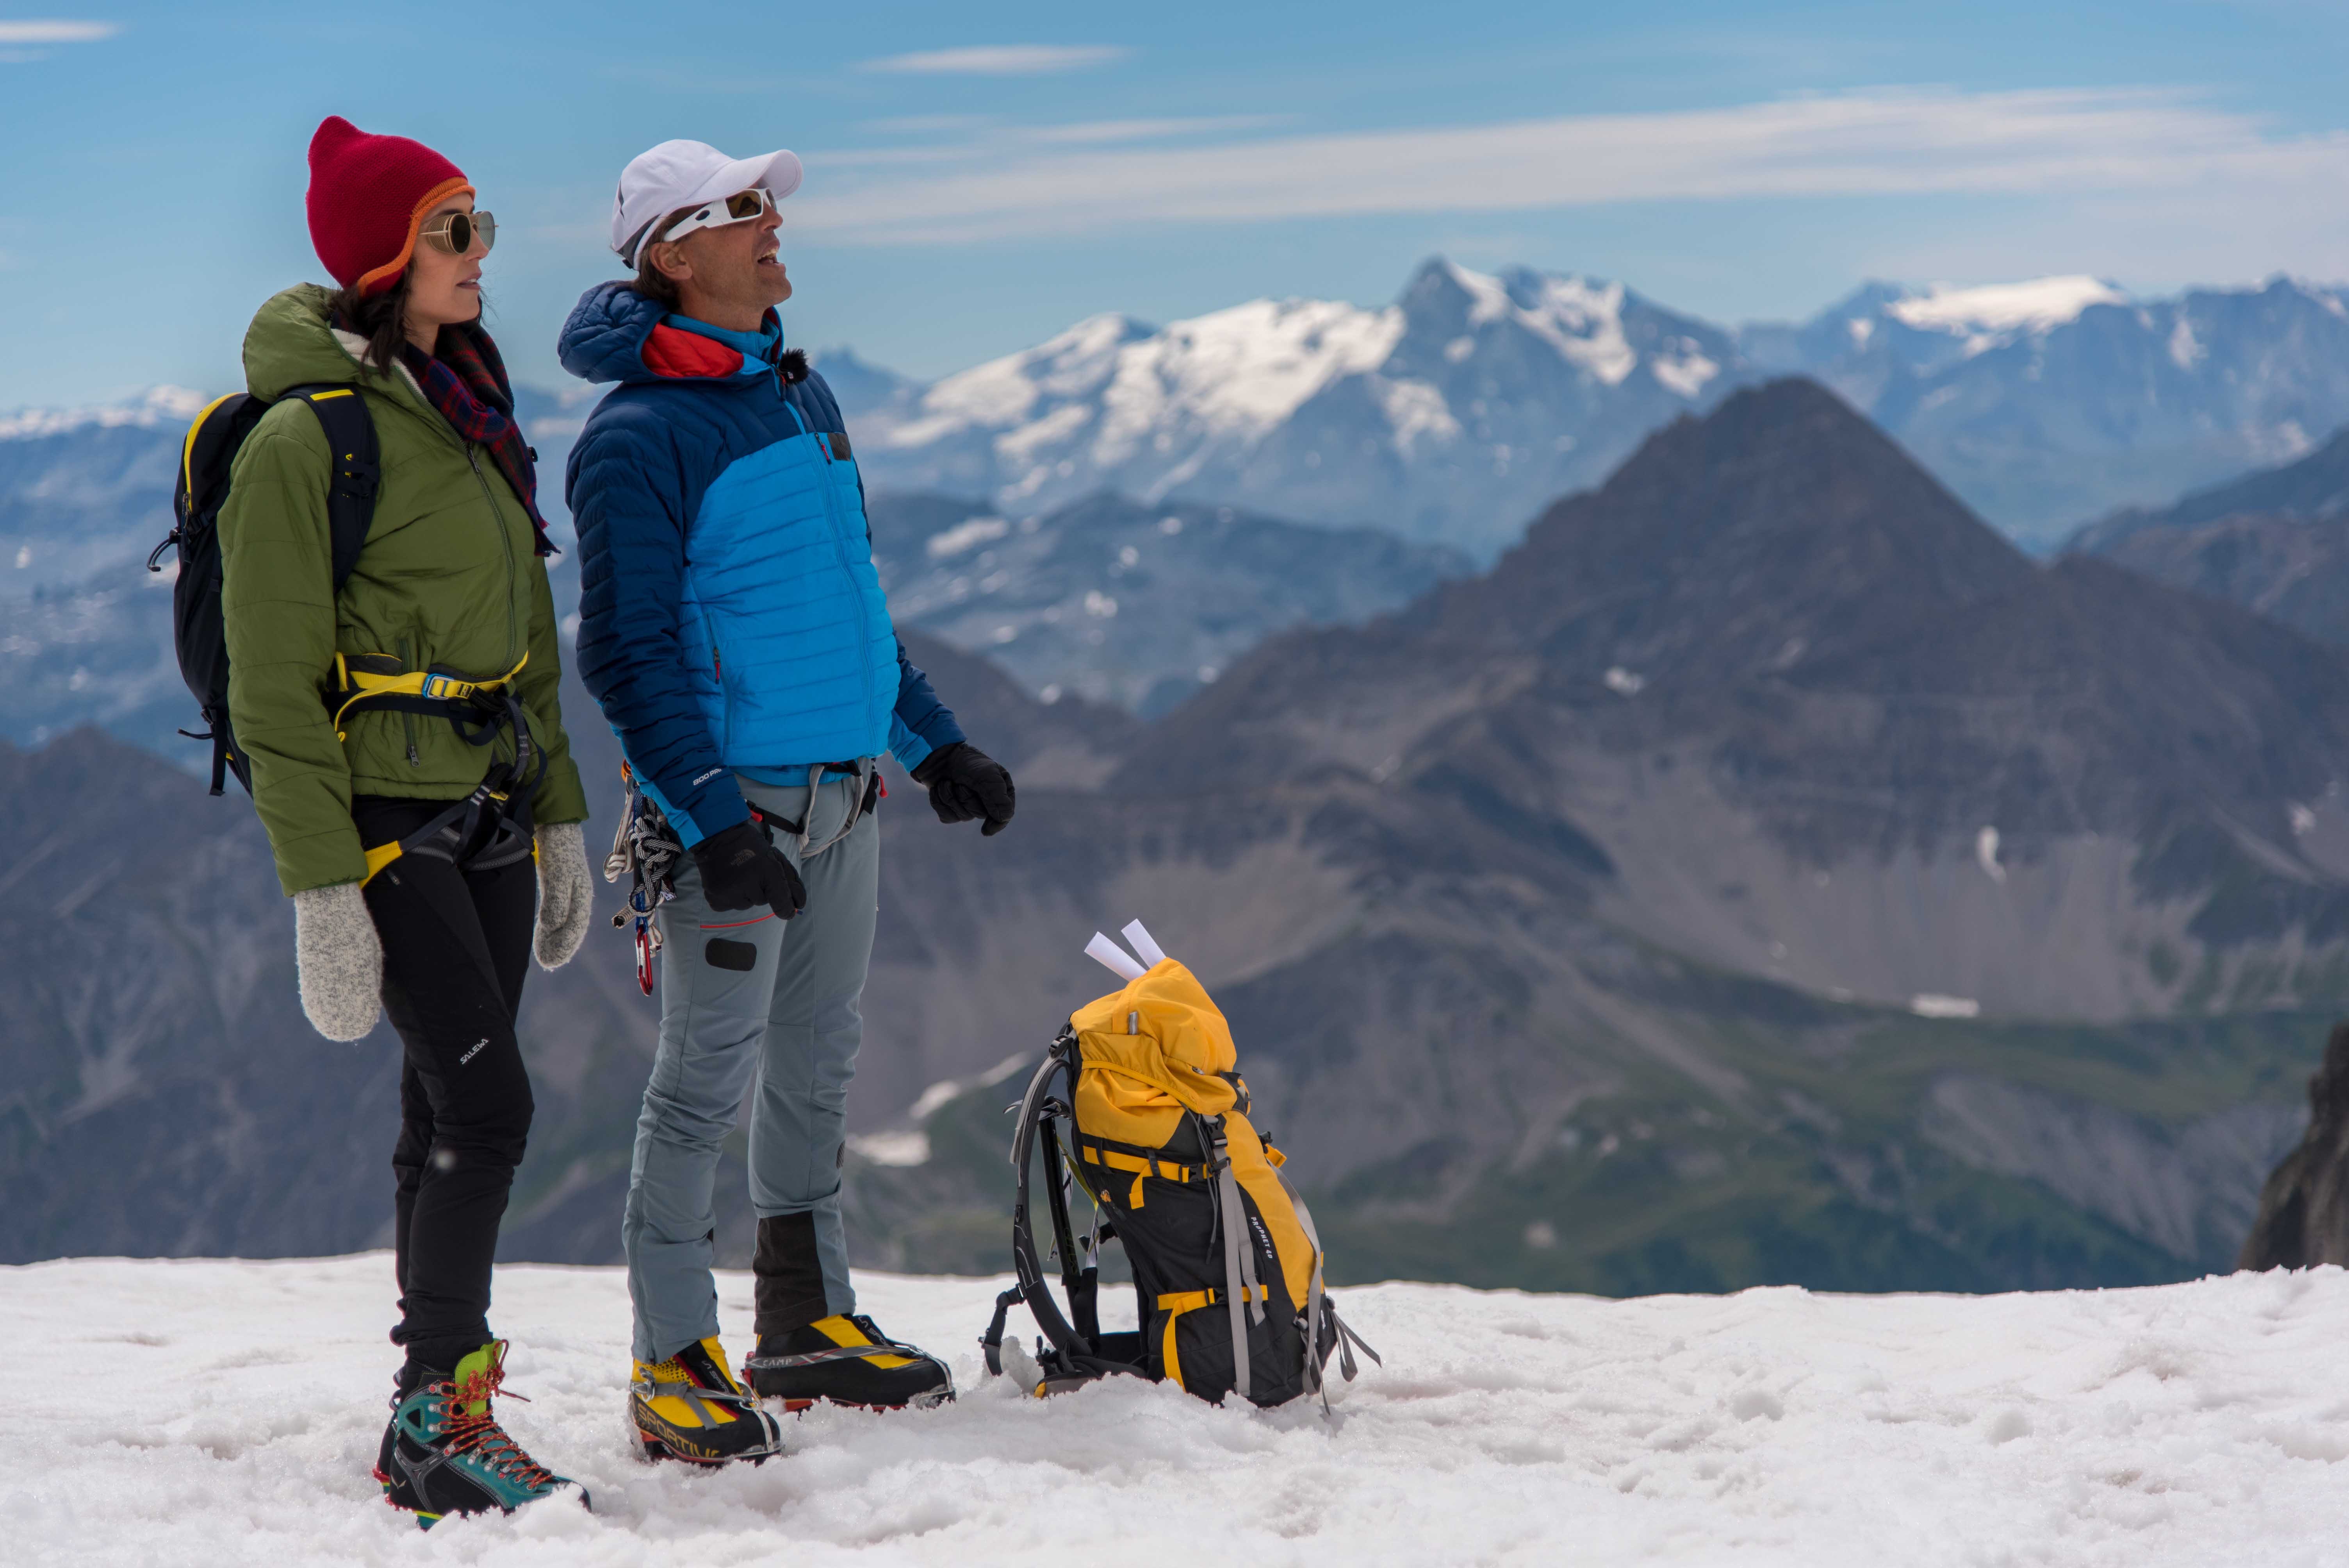  “Monte Bianco – Sfida Verticale”, il primo celebrity adventure show ad alta quota stasera la prima su Rai2